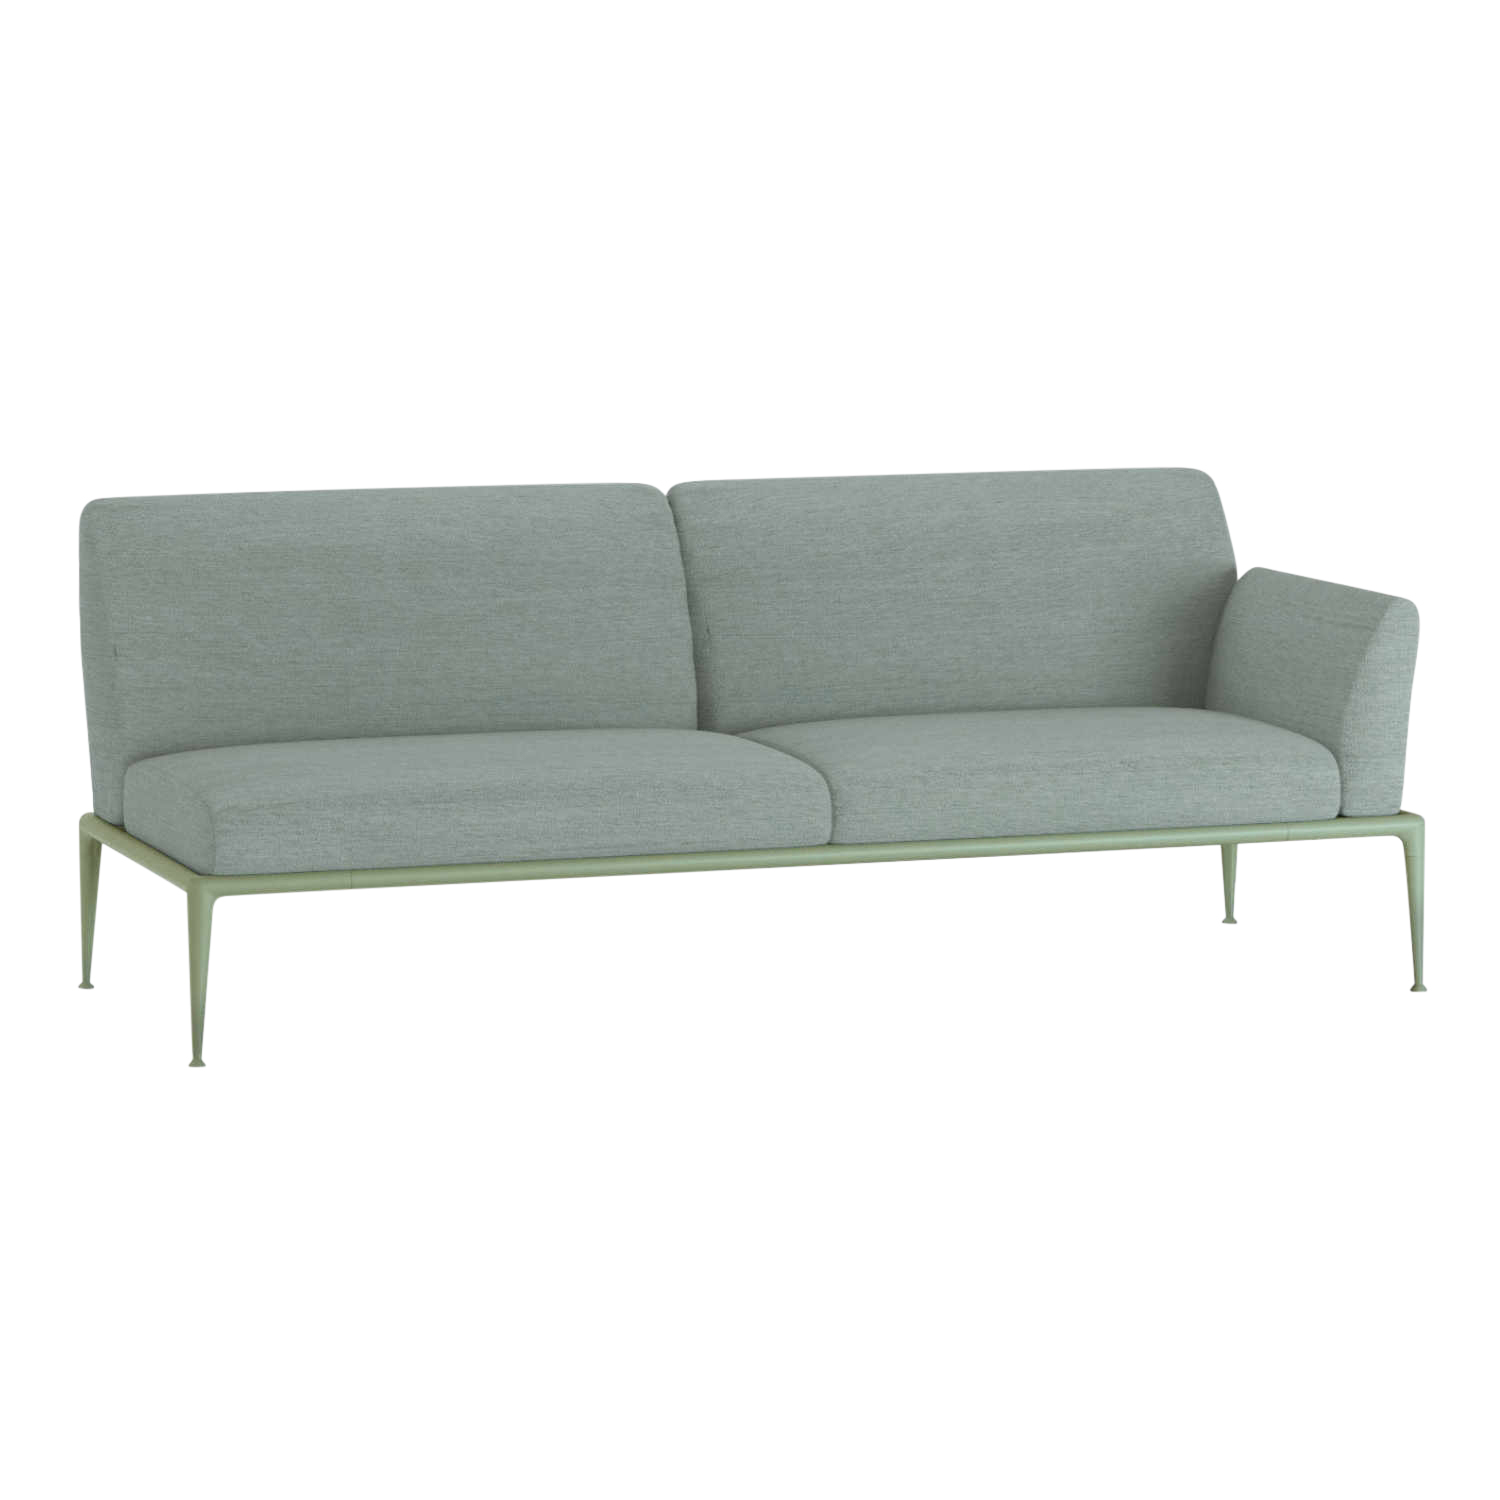 New Joint 3er Sofa, Ausführung armlehne links/sitzend rechts, Stoff range 1 solids, mineral (blau), Gestell aluminium lackiert, creamy white (creme... von FAST